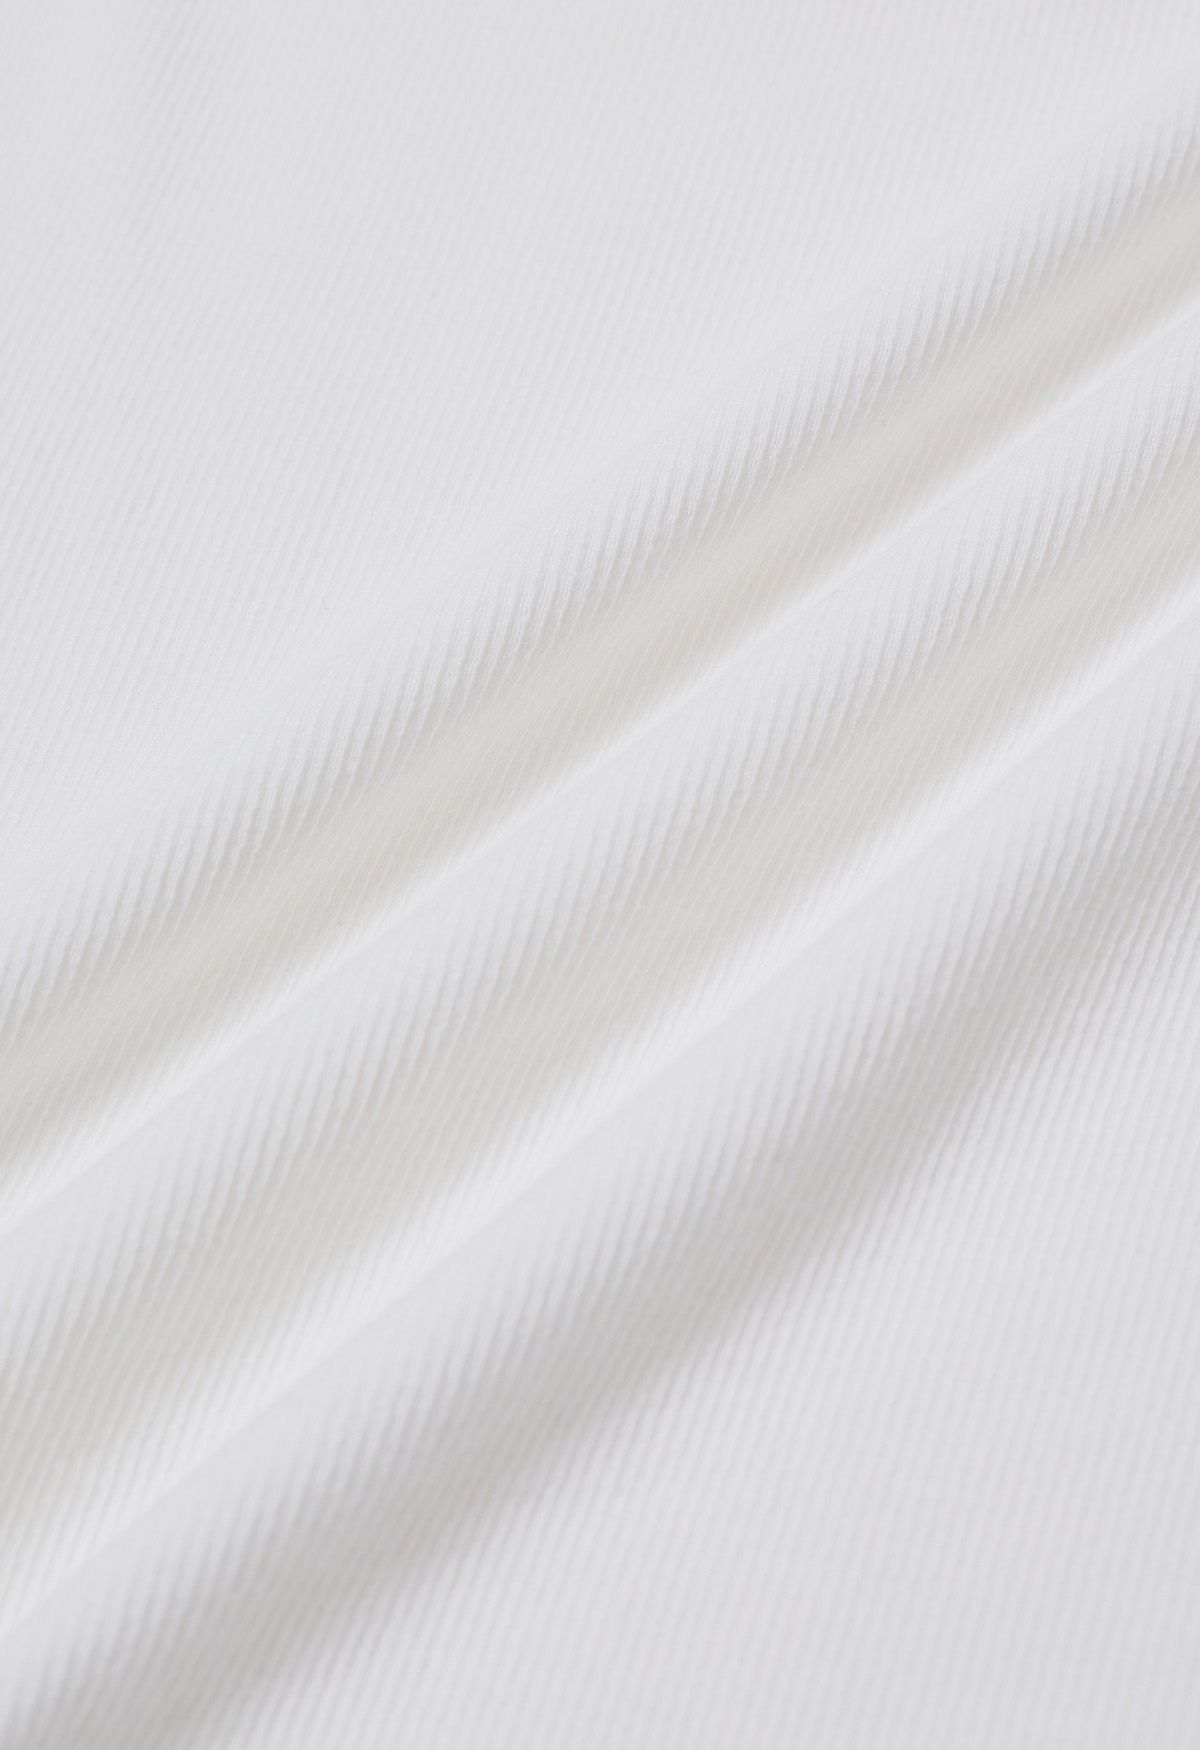 Simplicity – Camisole-Oberteil mit Knopfleiste vorn in Weiß